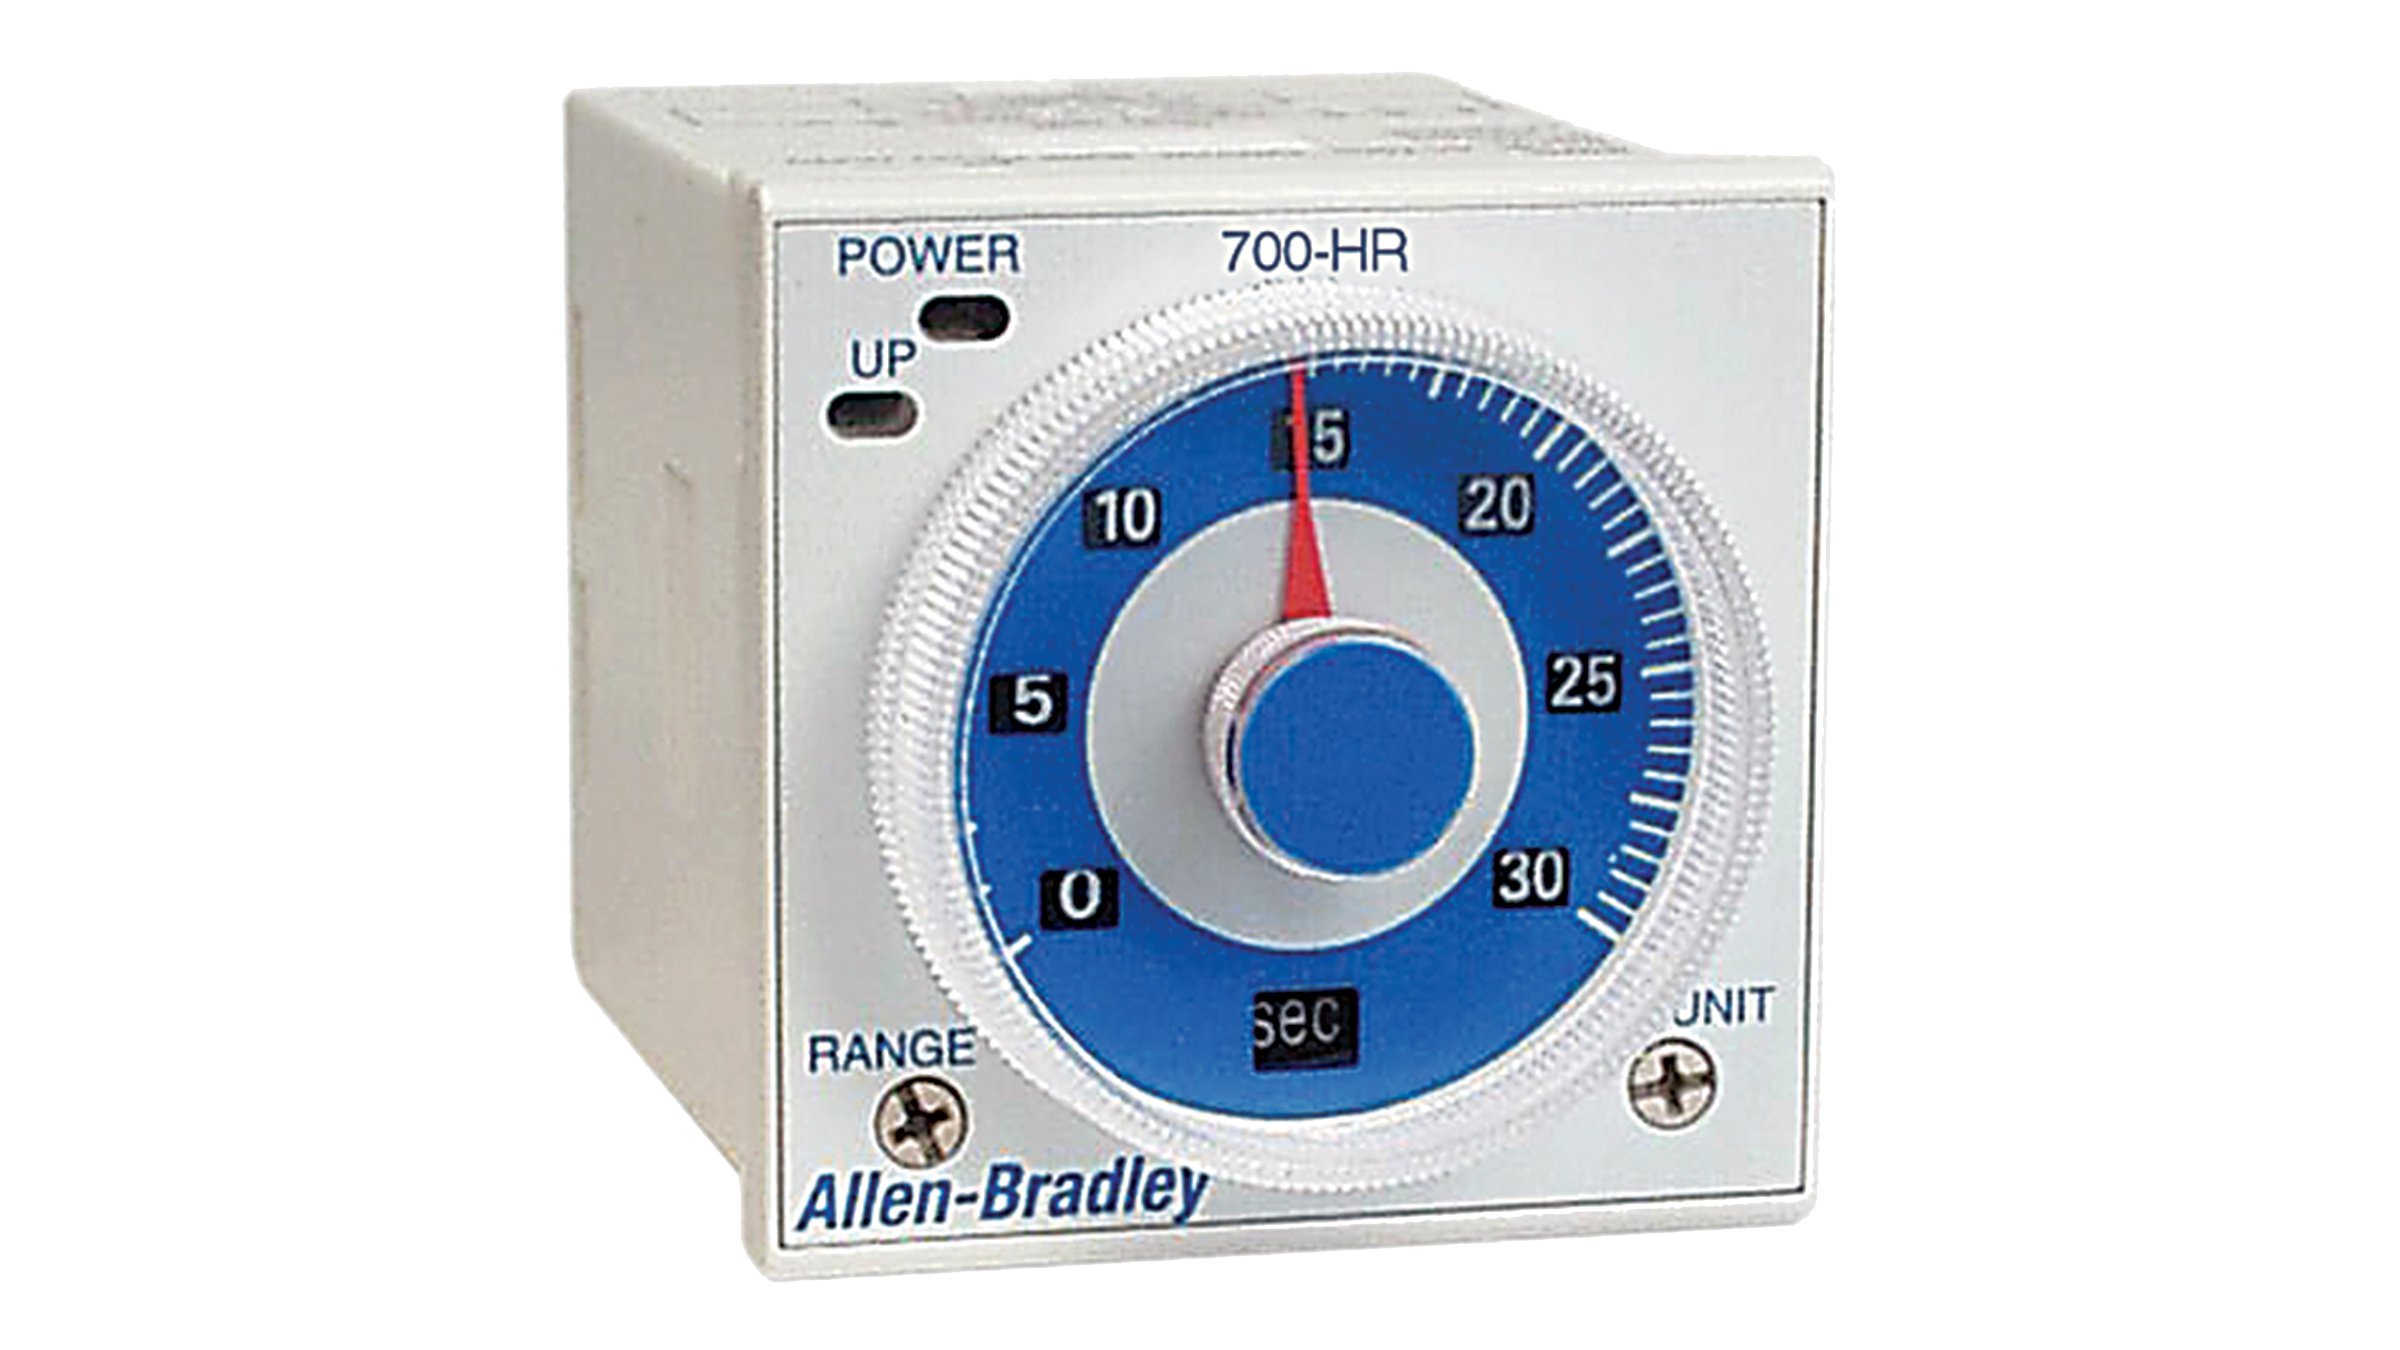 Allen-Bradley Wählscheiben-Zeitrelais der Serie 700-HR sind steckbare, sockelmontierte Zeitrelais.